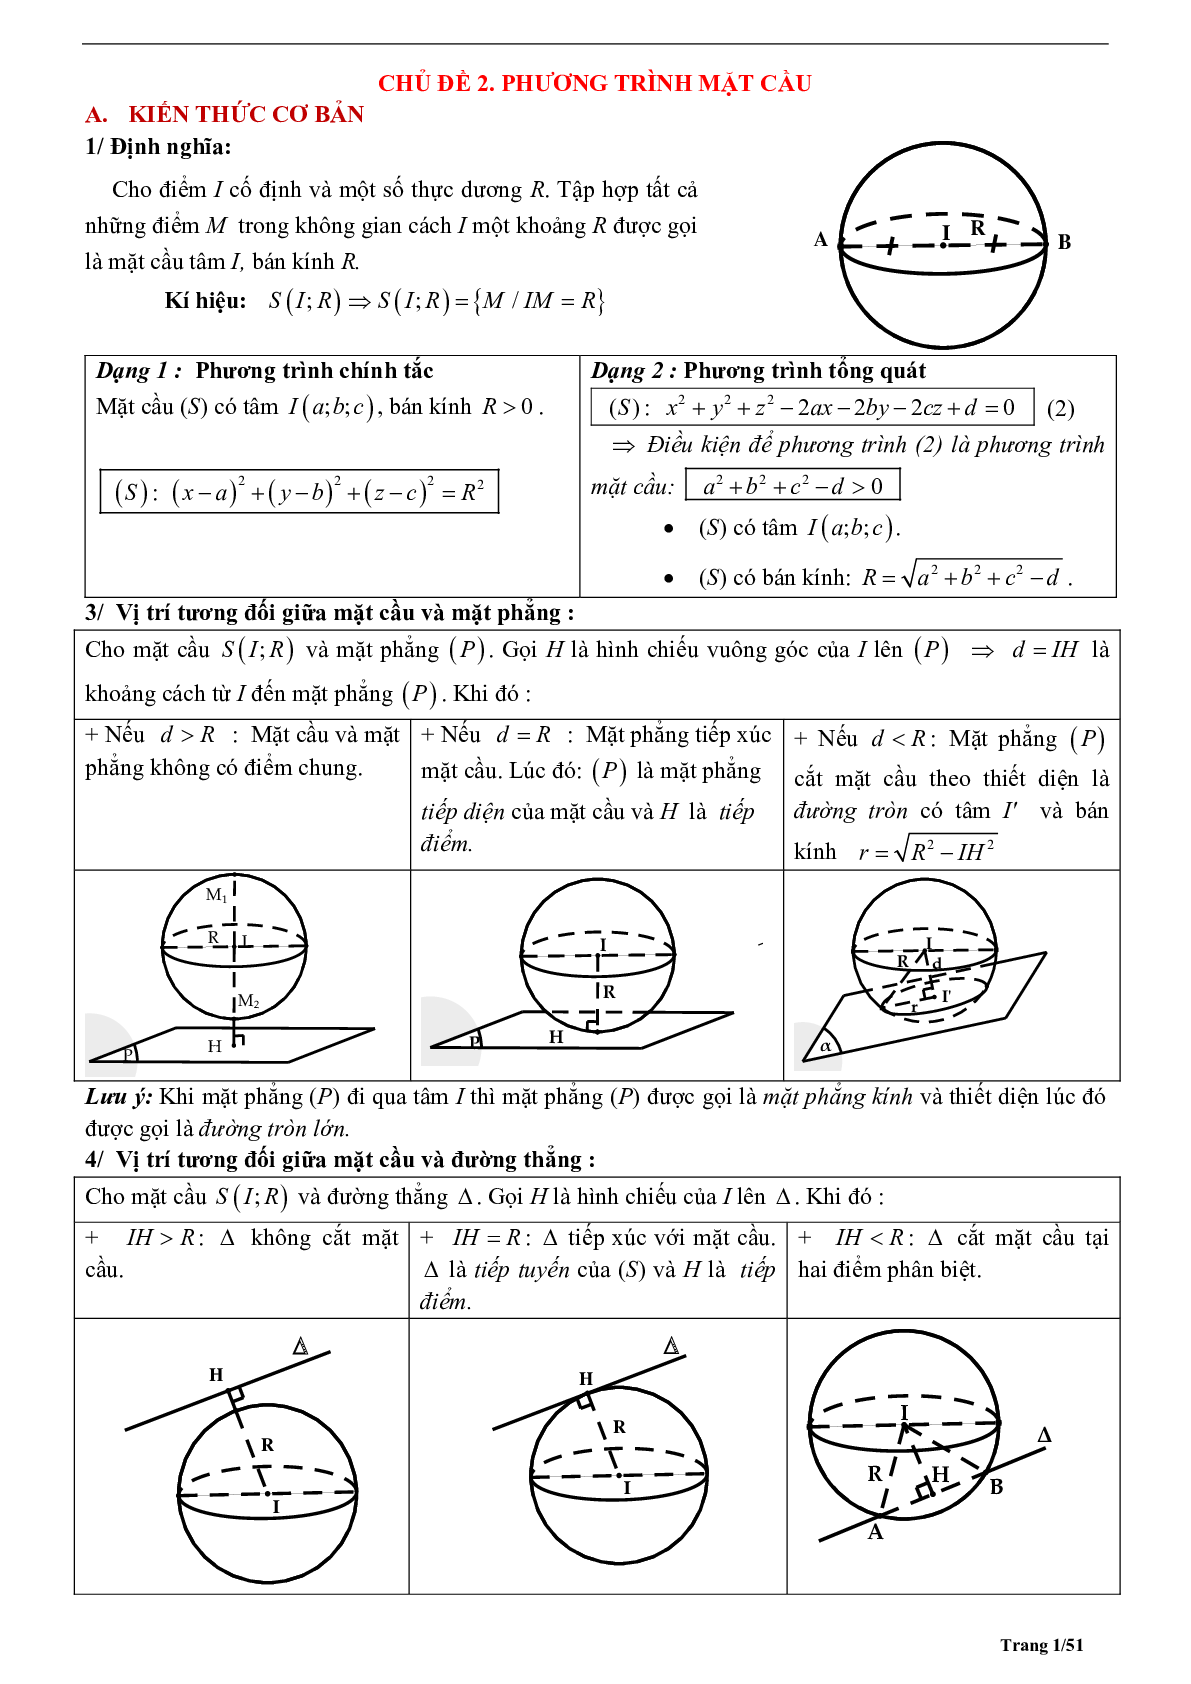 Tóm tắt lý thuyết và bài tập trắc nghiệm phương trình mặt cầu (trang 1)